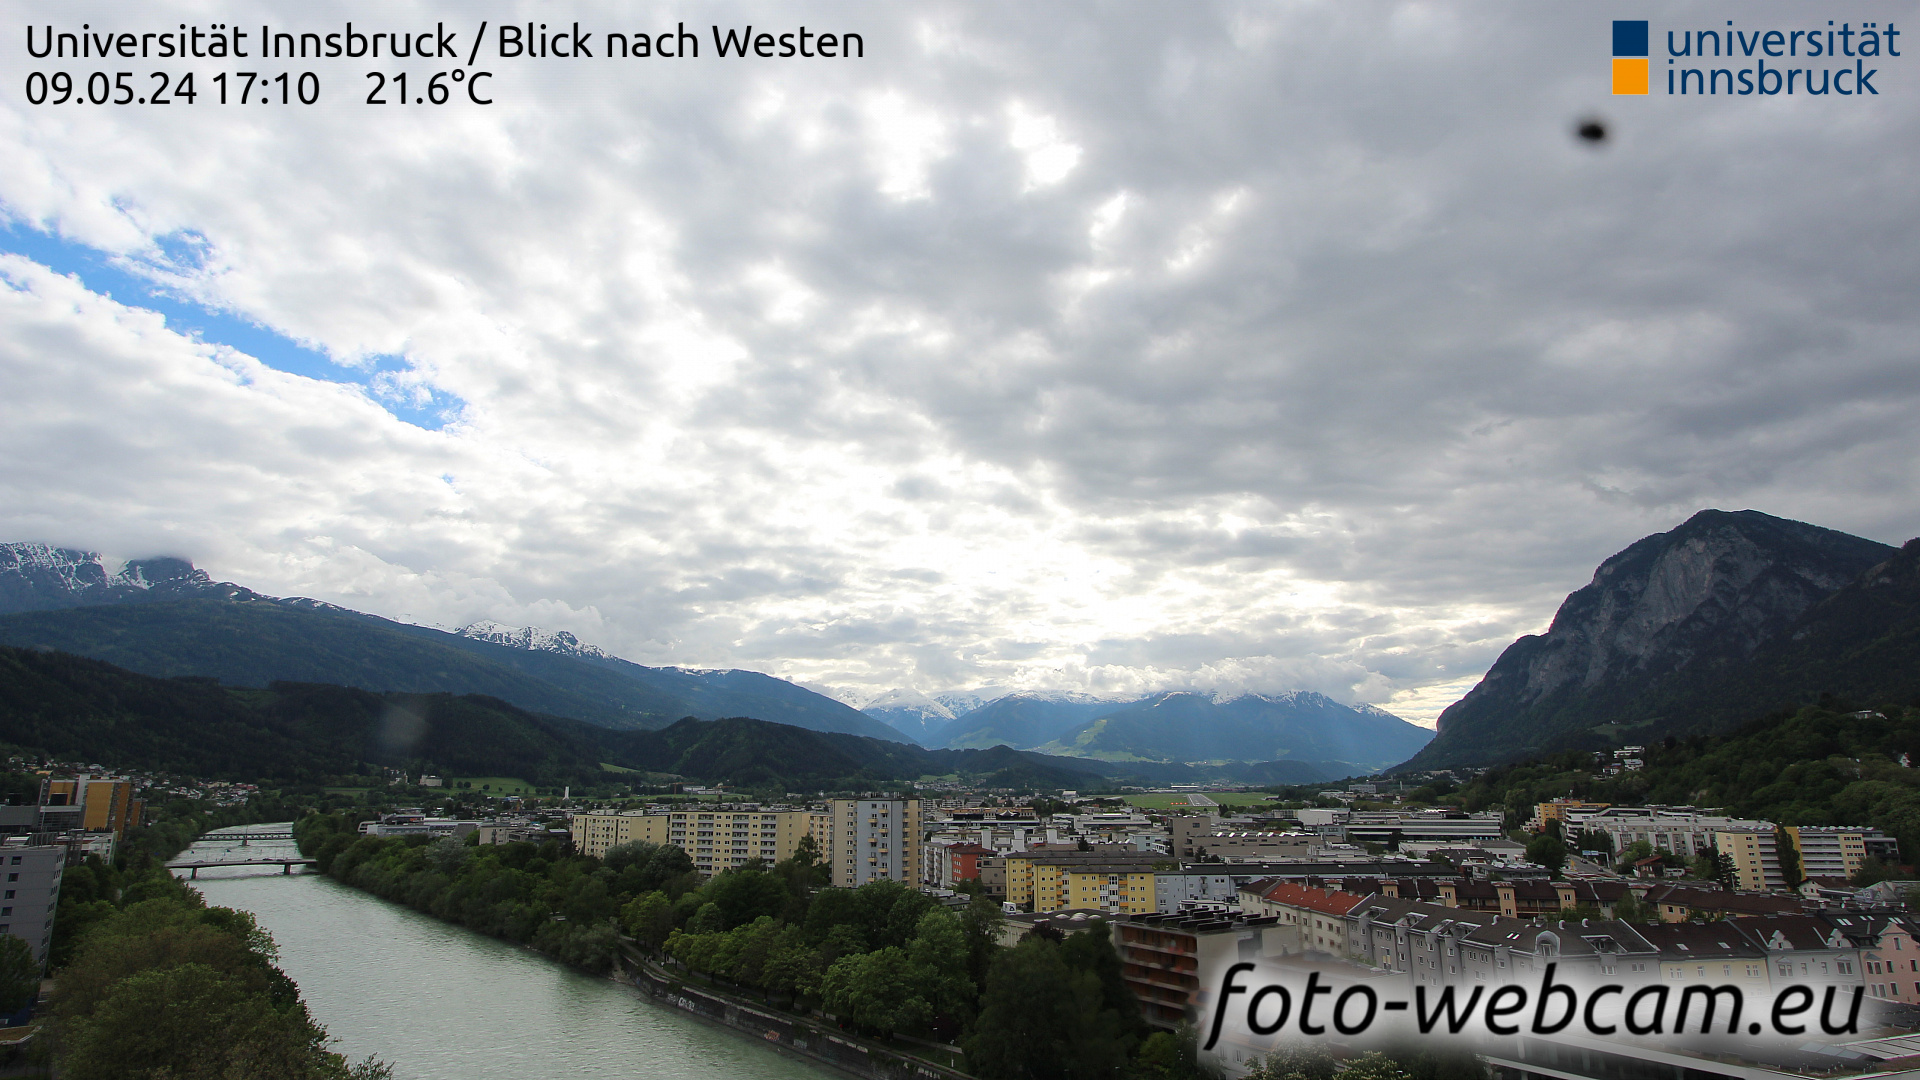 Innsbruck Thu. 17:17